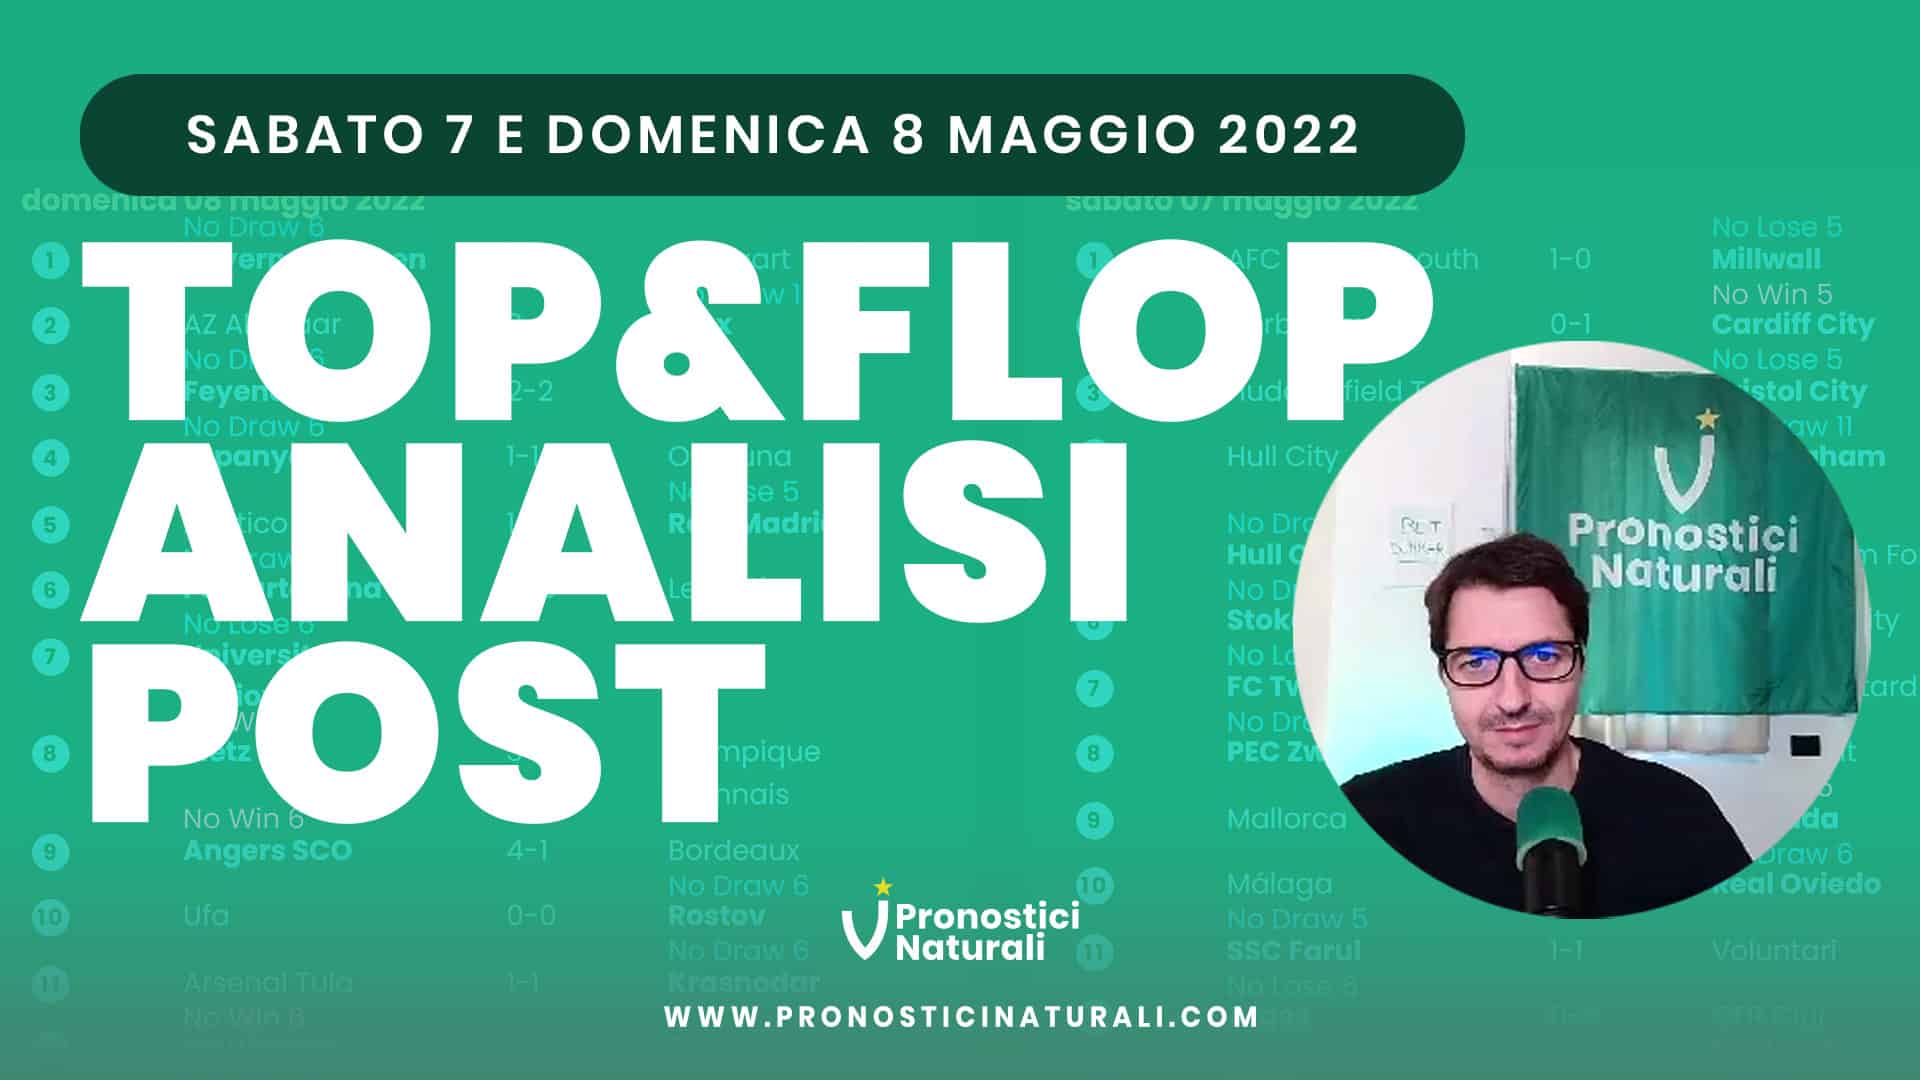 Pronostici Naturali Video Analisi Scommesse Betting Calcio Analisi Post Partite 8 9 Maggio 2022